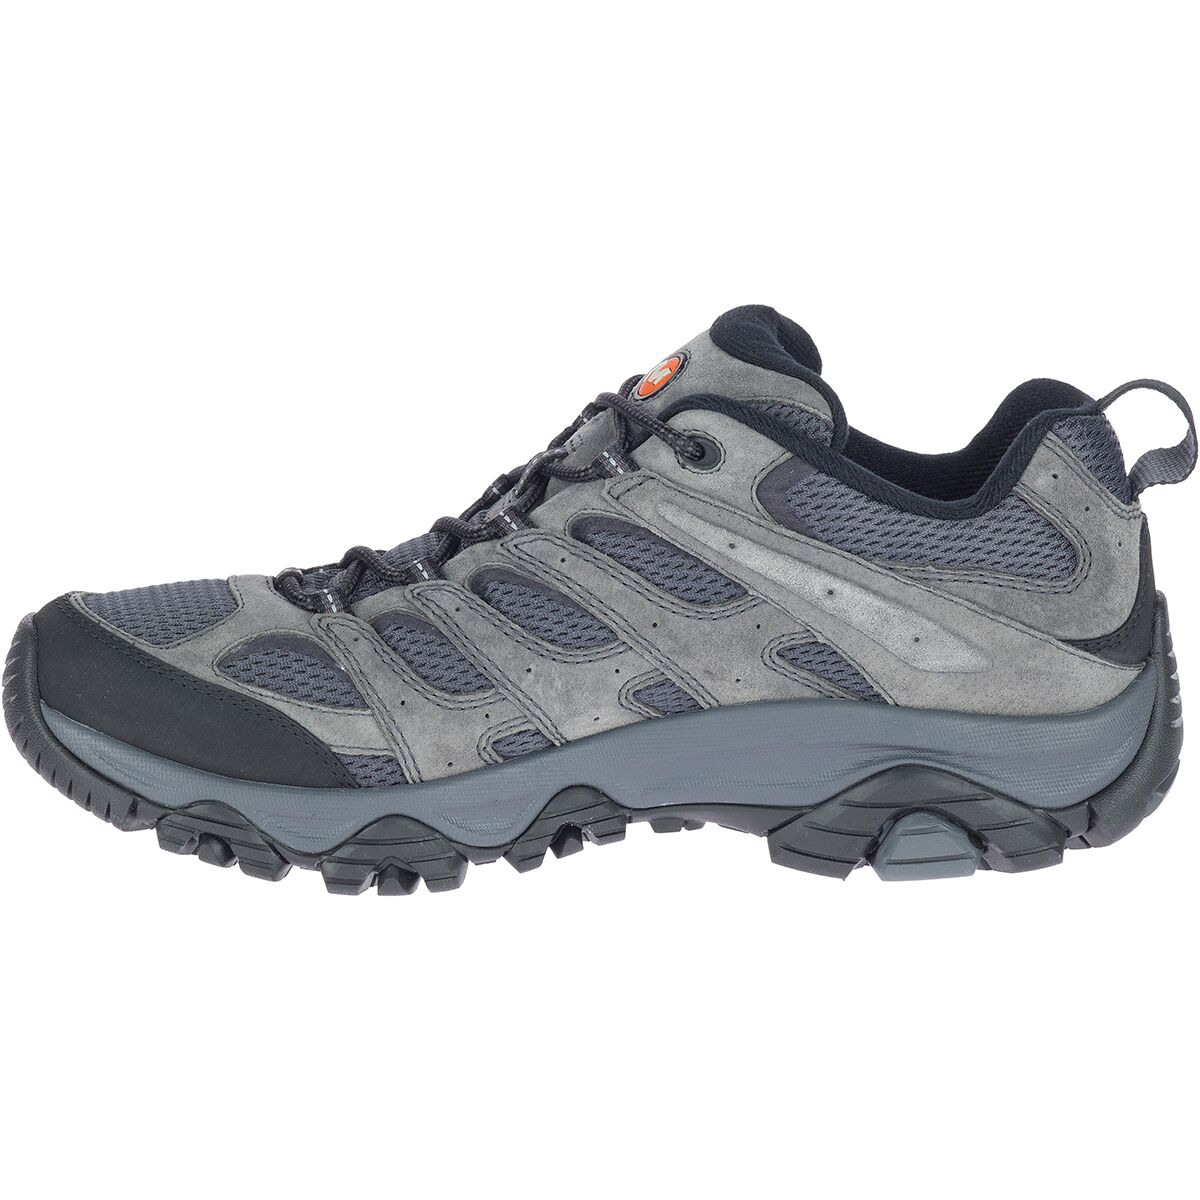 Merrell Moab 3 Wide Hiking Shoe - Men's - Footwear